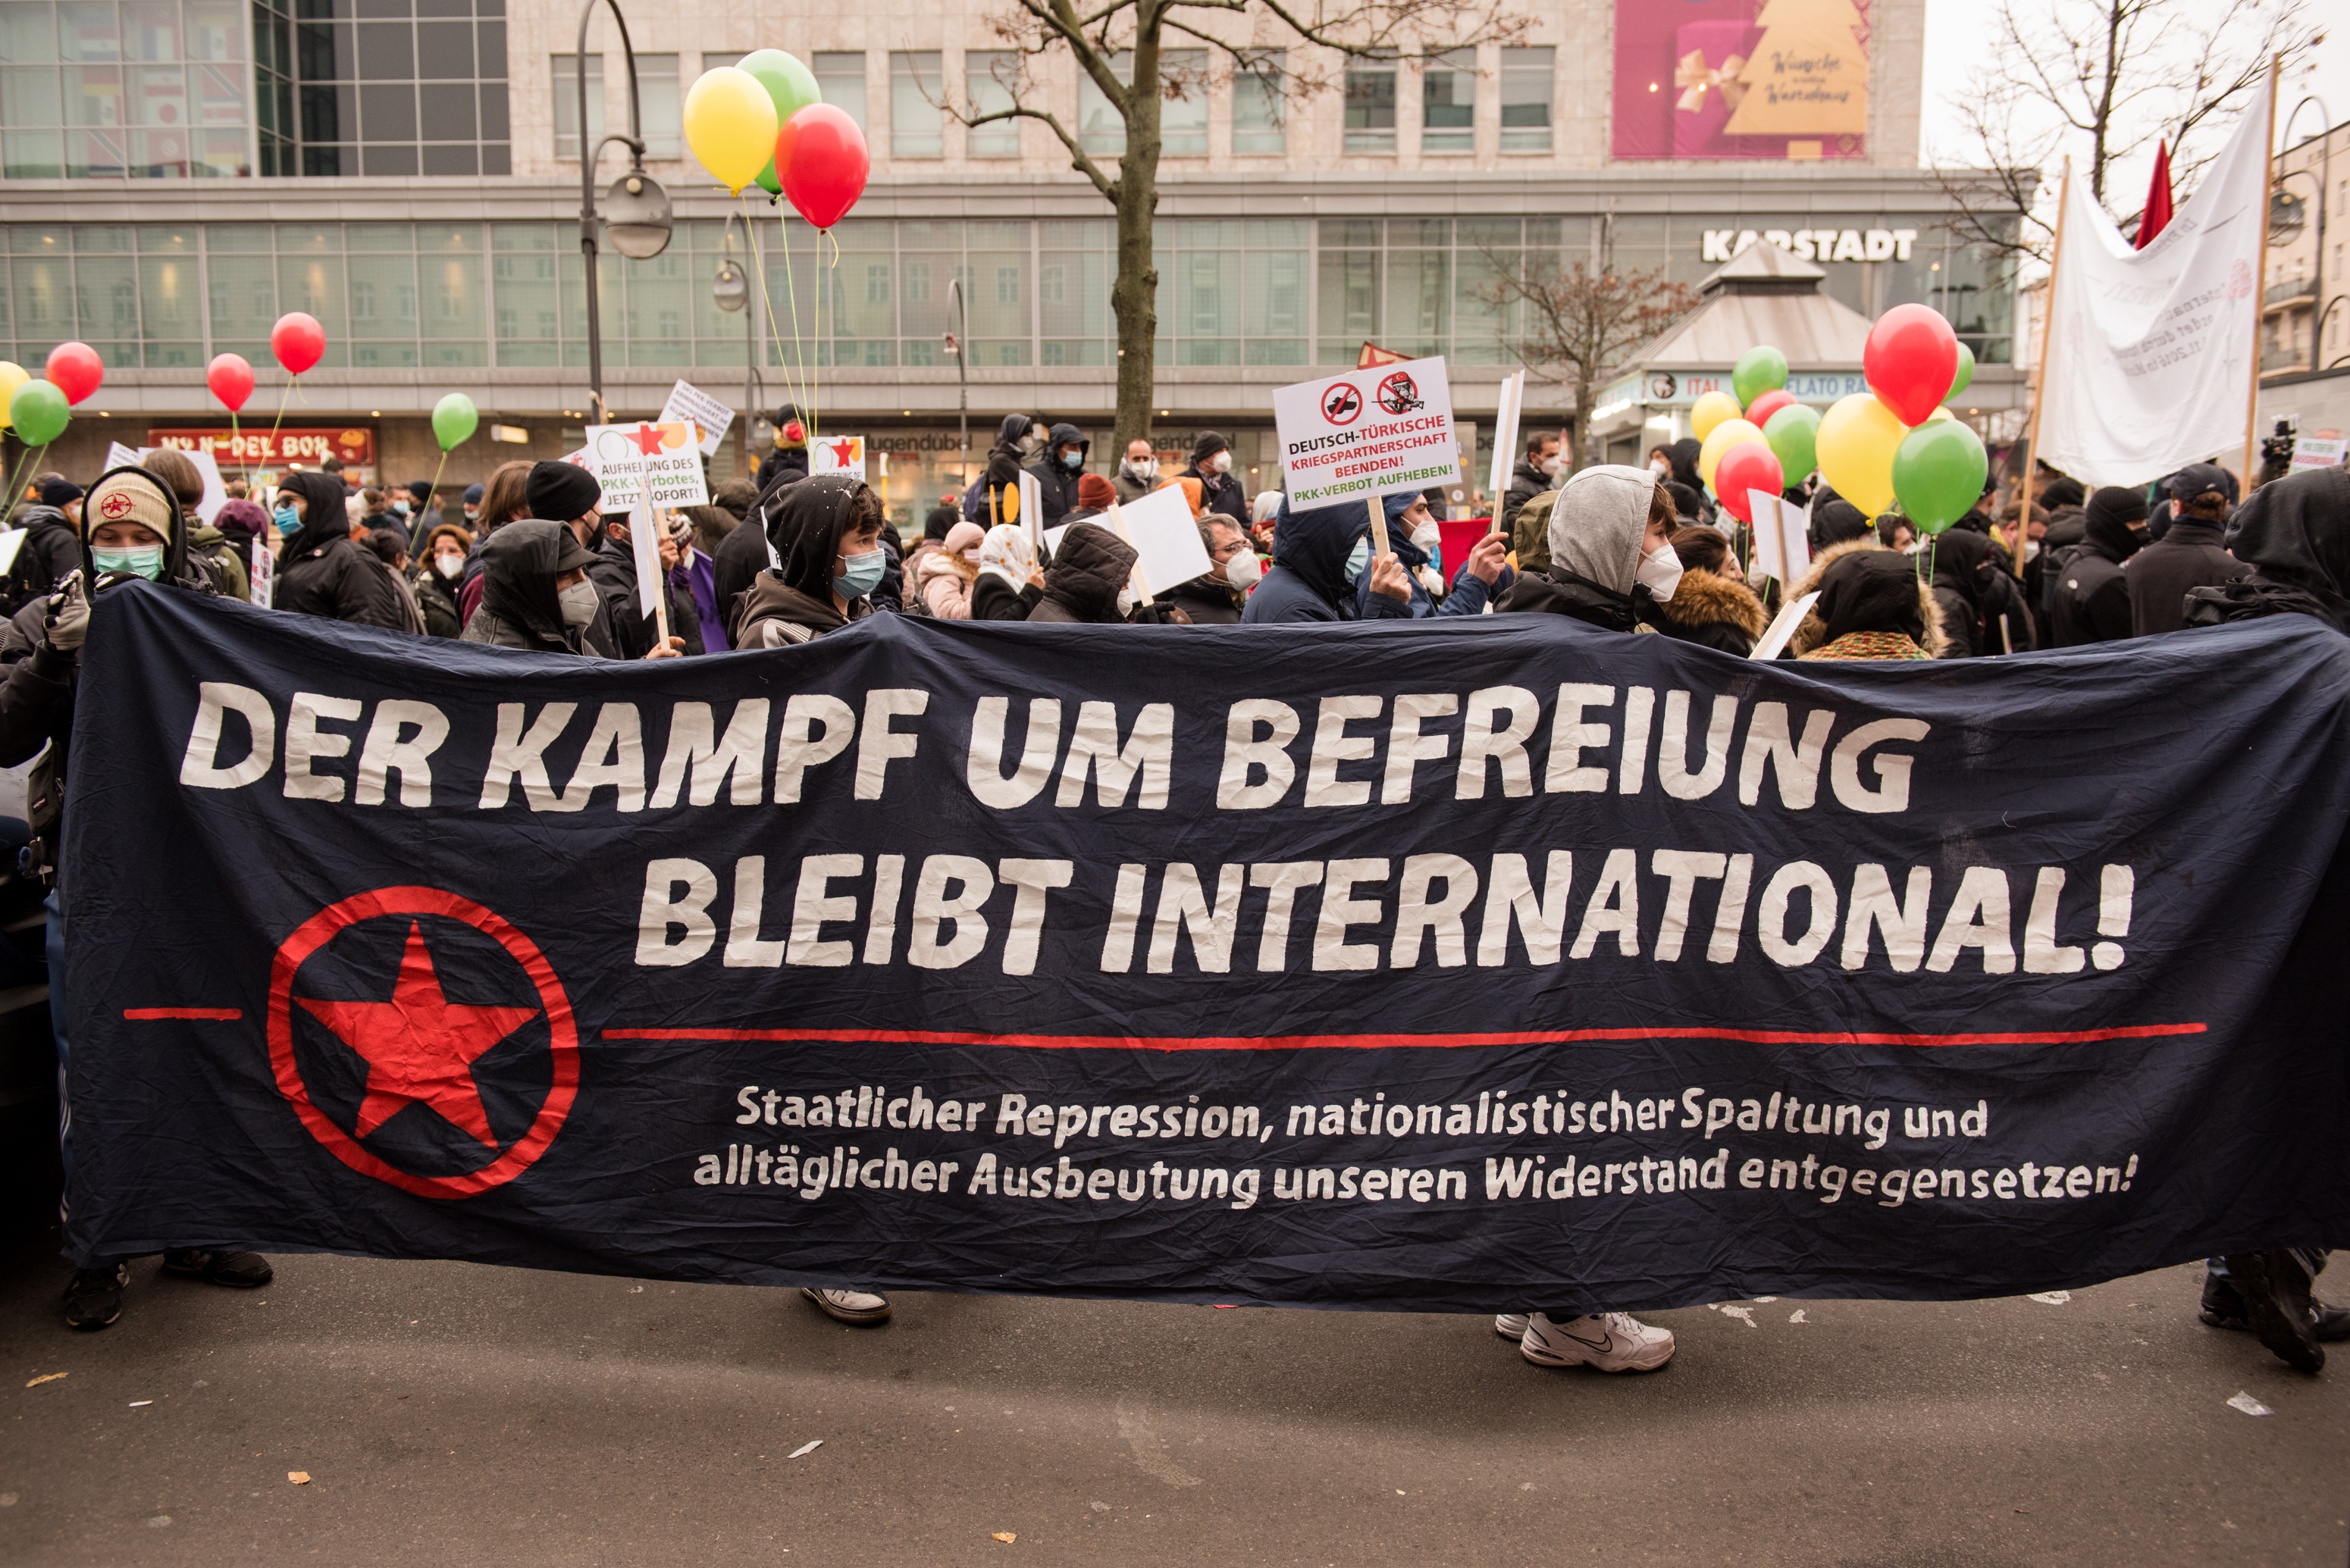 Die Aufnahme zeigt einen Protestmarsch am 27.11.2021 in Berlin mit dem Transparent "Der Kampf um Befreiung bleibt international"